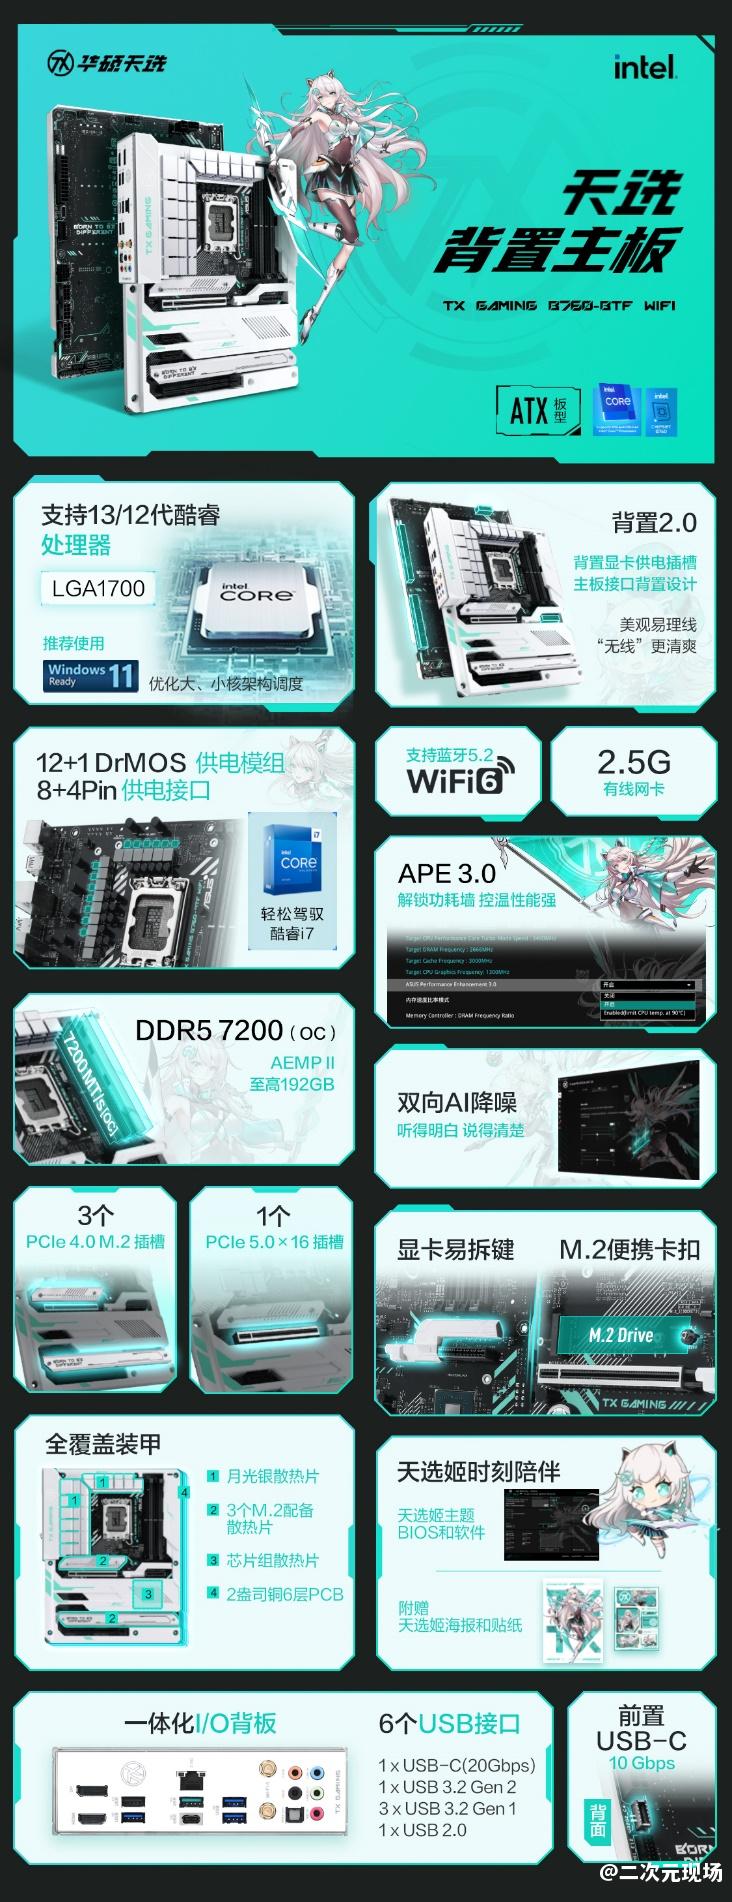 华硕BTF 2.0“无线”心动 天选新成员战力【背】增